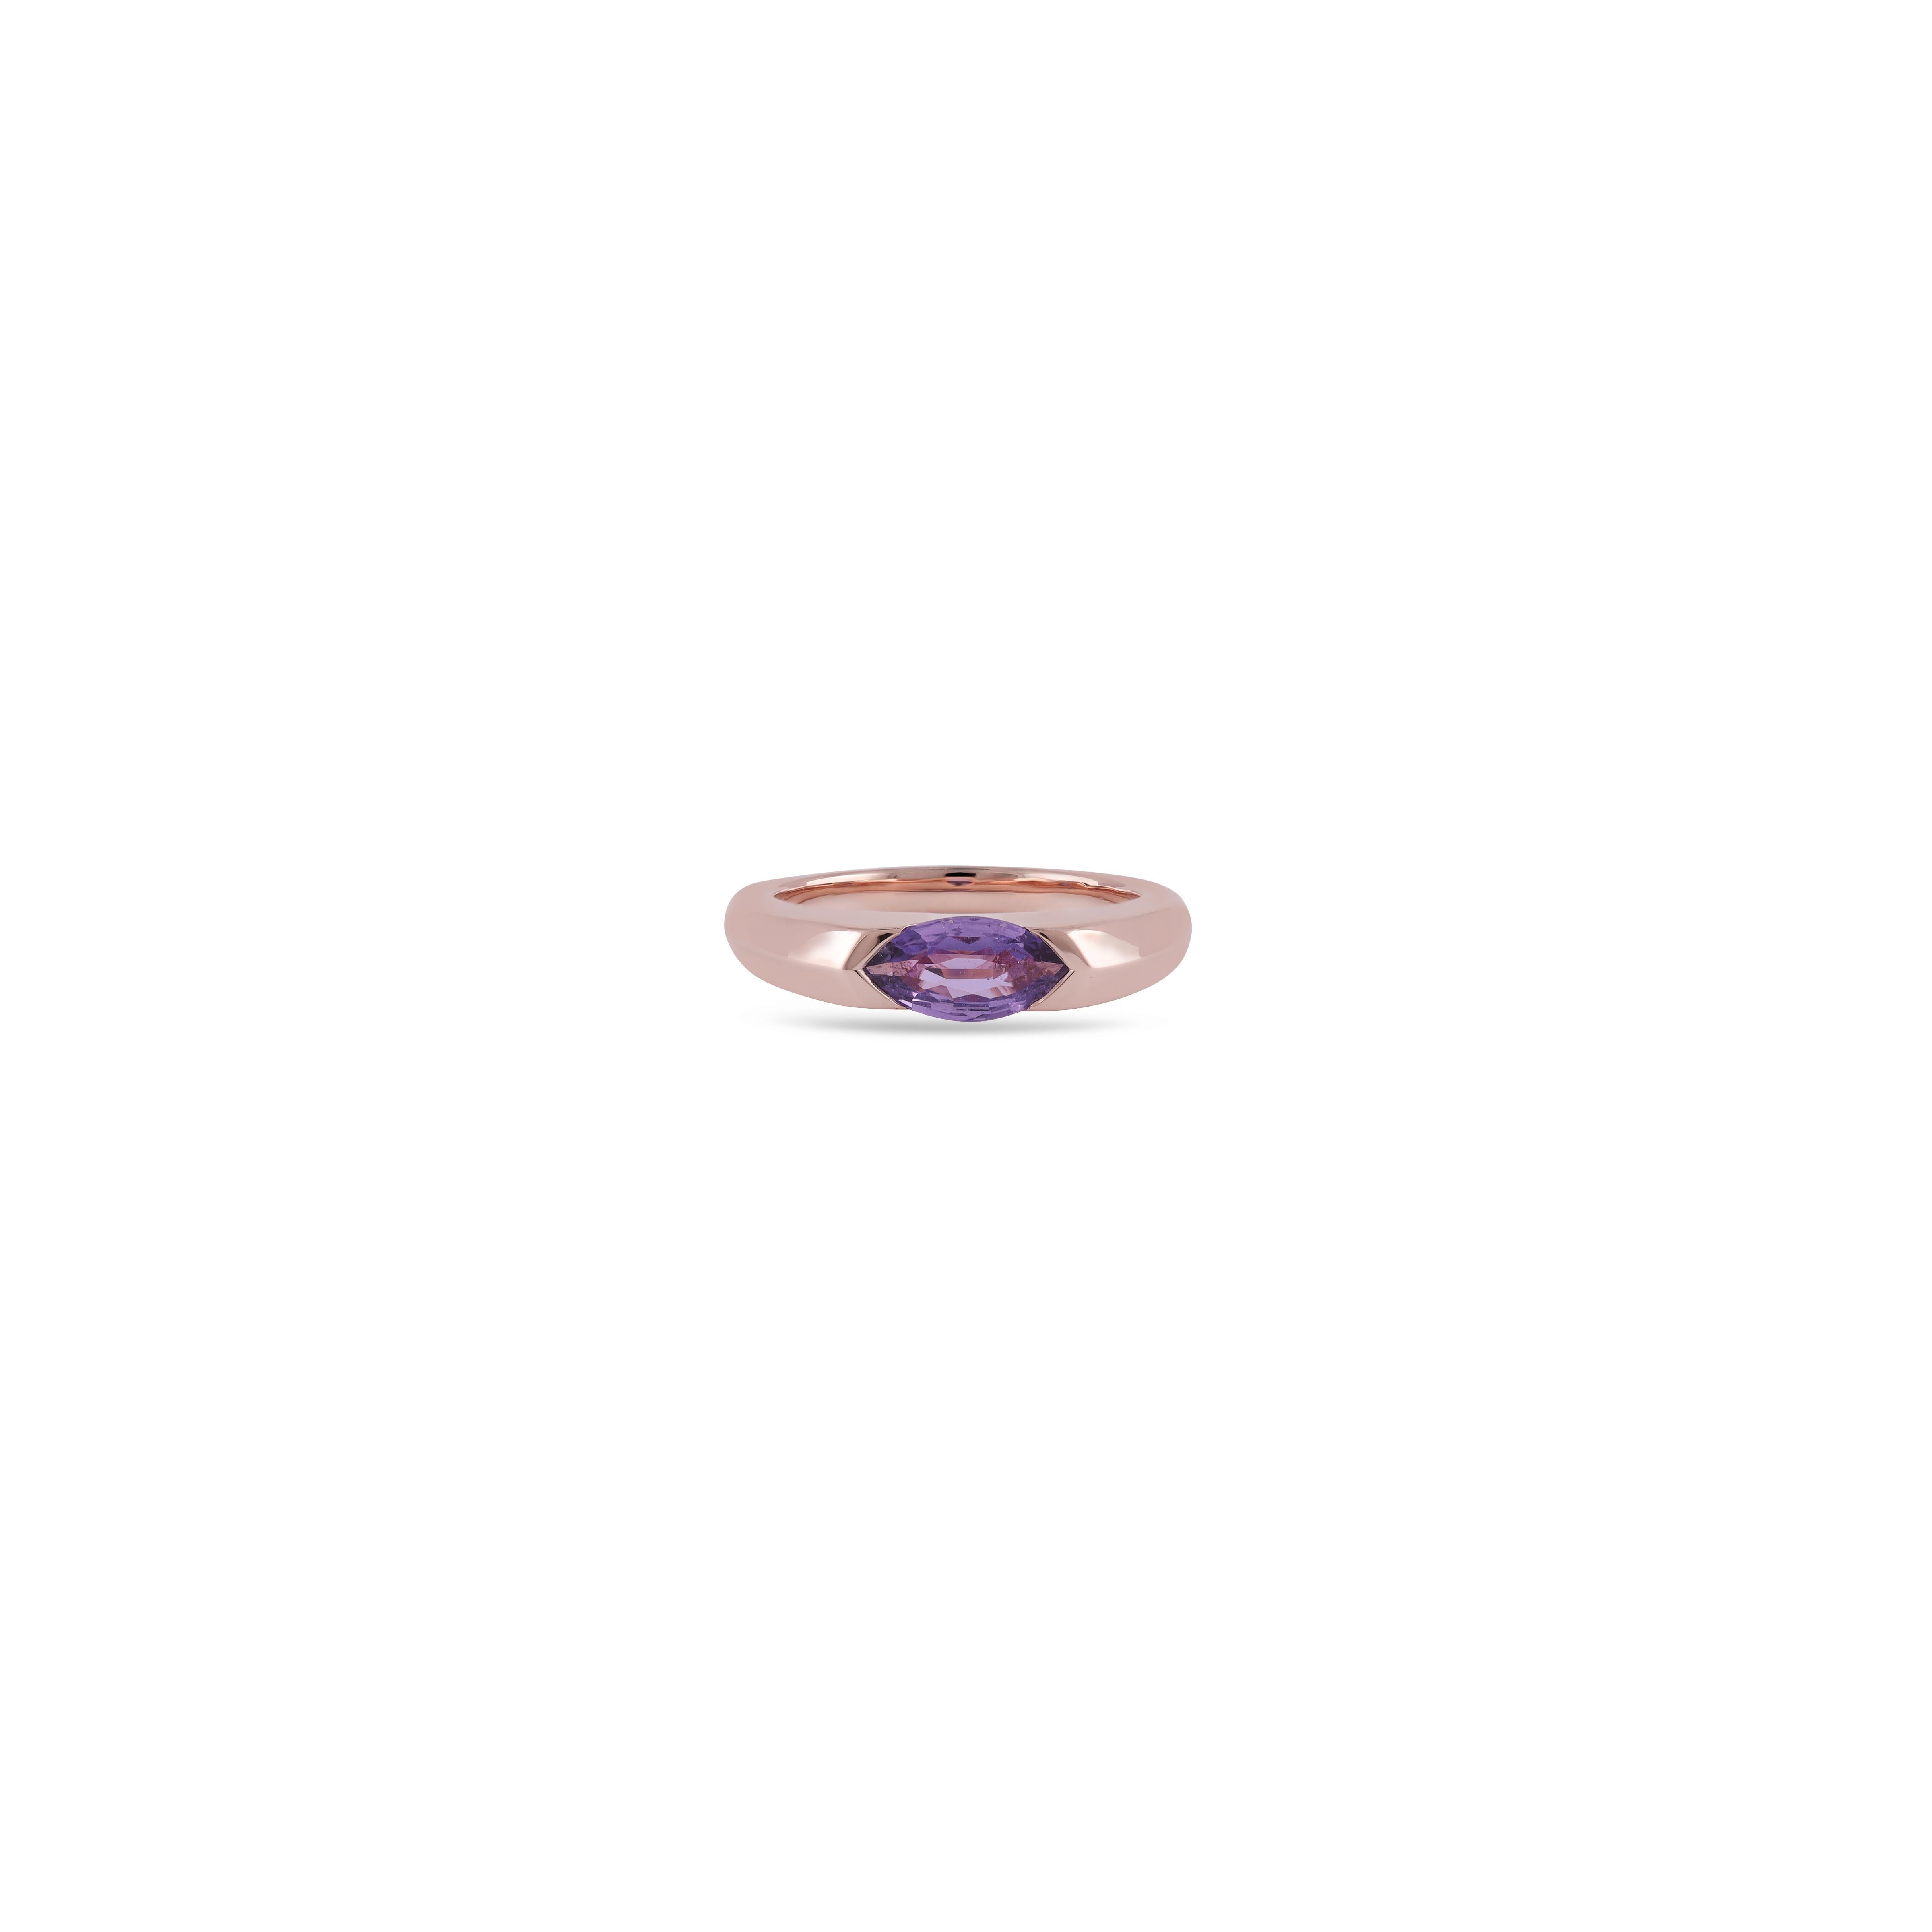 Es ist ein exklusiver Clear Multi Sapphire  Ring beschlagen in 18k Rose Gold mit 1 Stück Saphir Gewicht 0,99 Karat mit diesem gesamten Ring ist in 18k Rose Gold beschlagen, Ringgröße kann wie pro die Anforderung geändert werden, seine eine exklusive